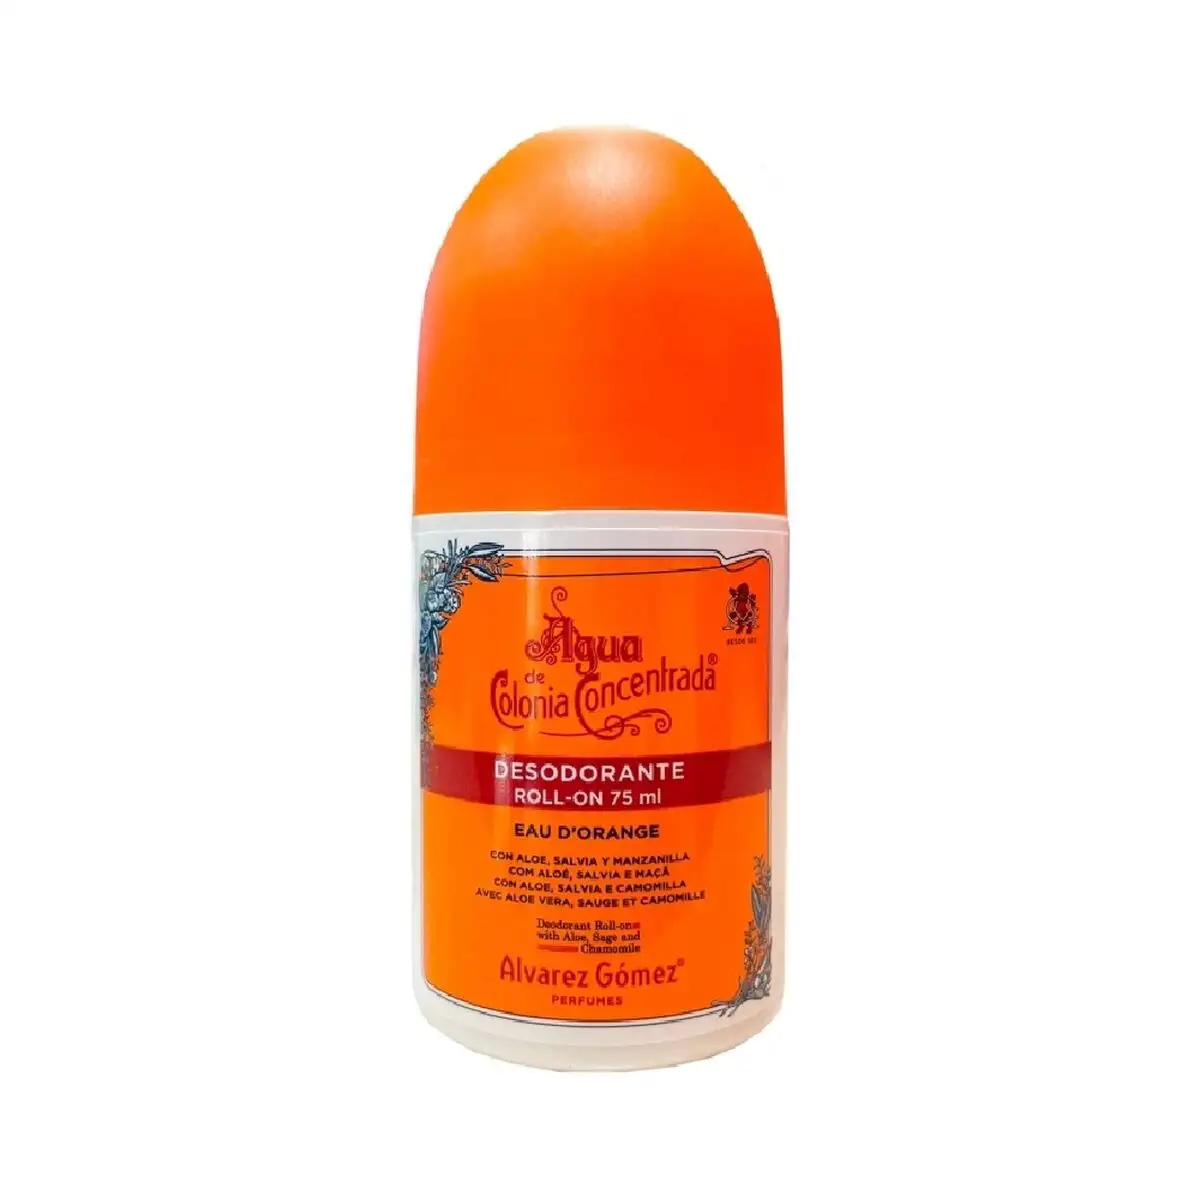 Deodorant roll on alvarez gomez eau d orange 75 ml_4065. Bienvenue chez DIAYTAR SENEGAL - Où Choisir Rime avec Découvrir. Plongez dans notre catalogue et trouvez des produits qui révèlent la diversité et la richesse culturelle du Sénégal.